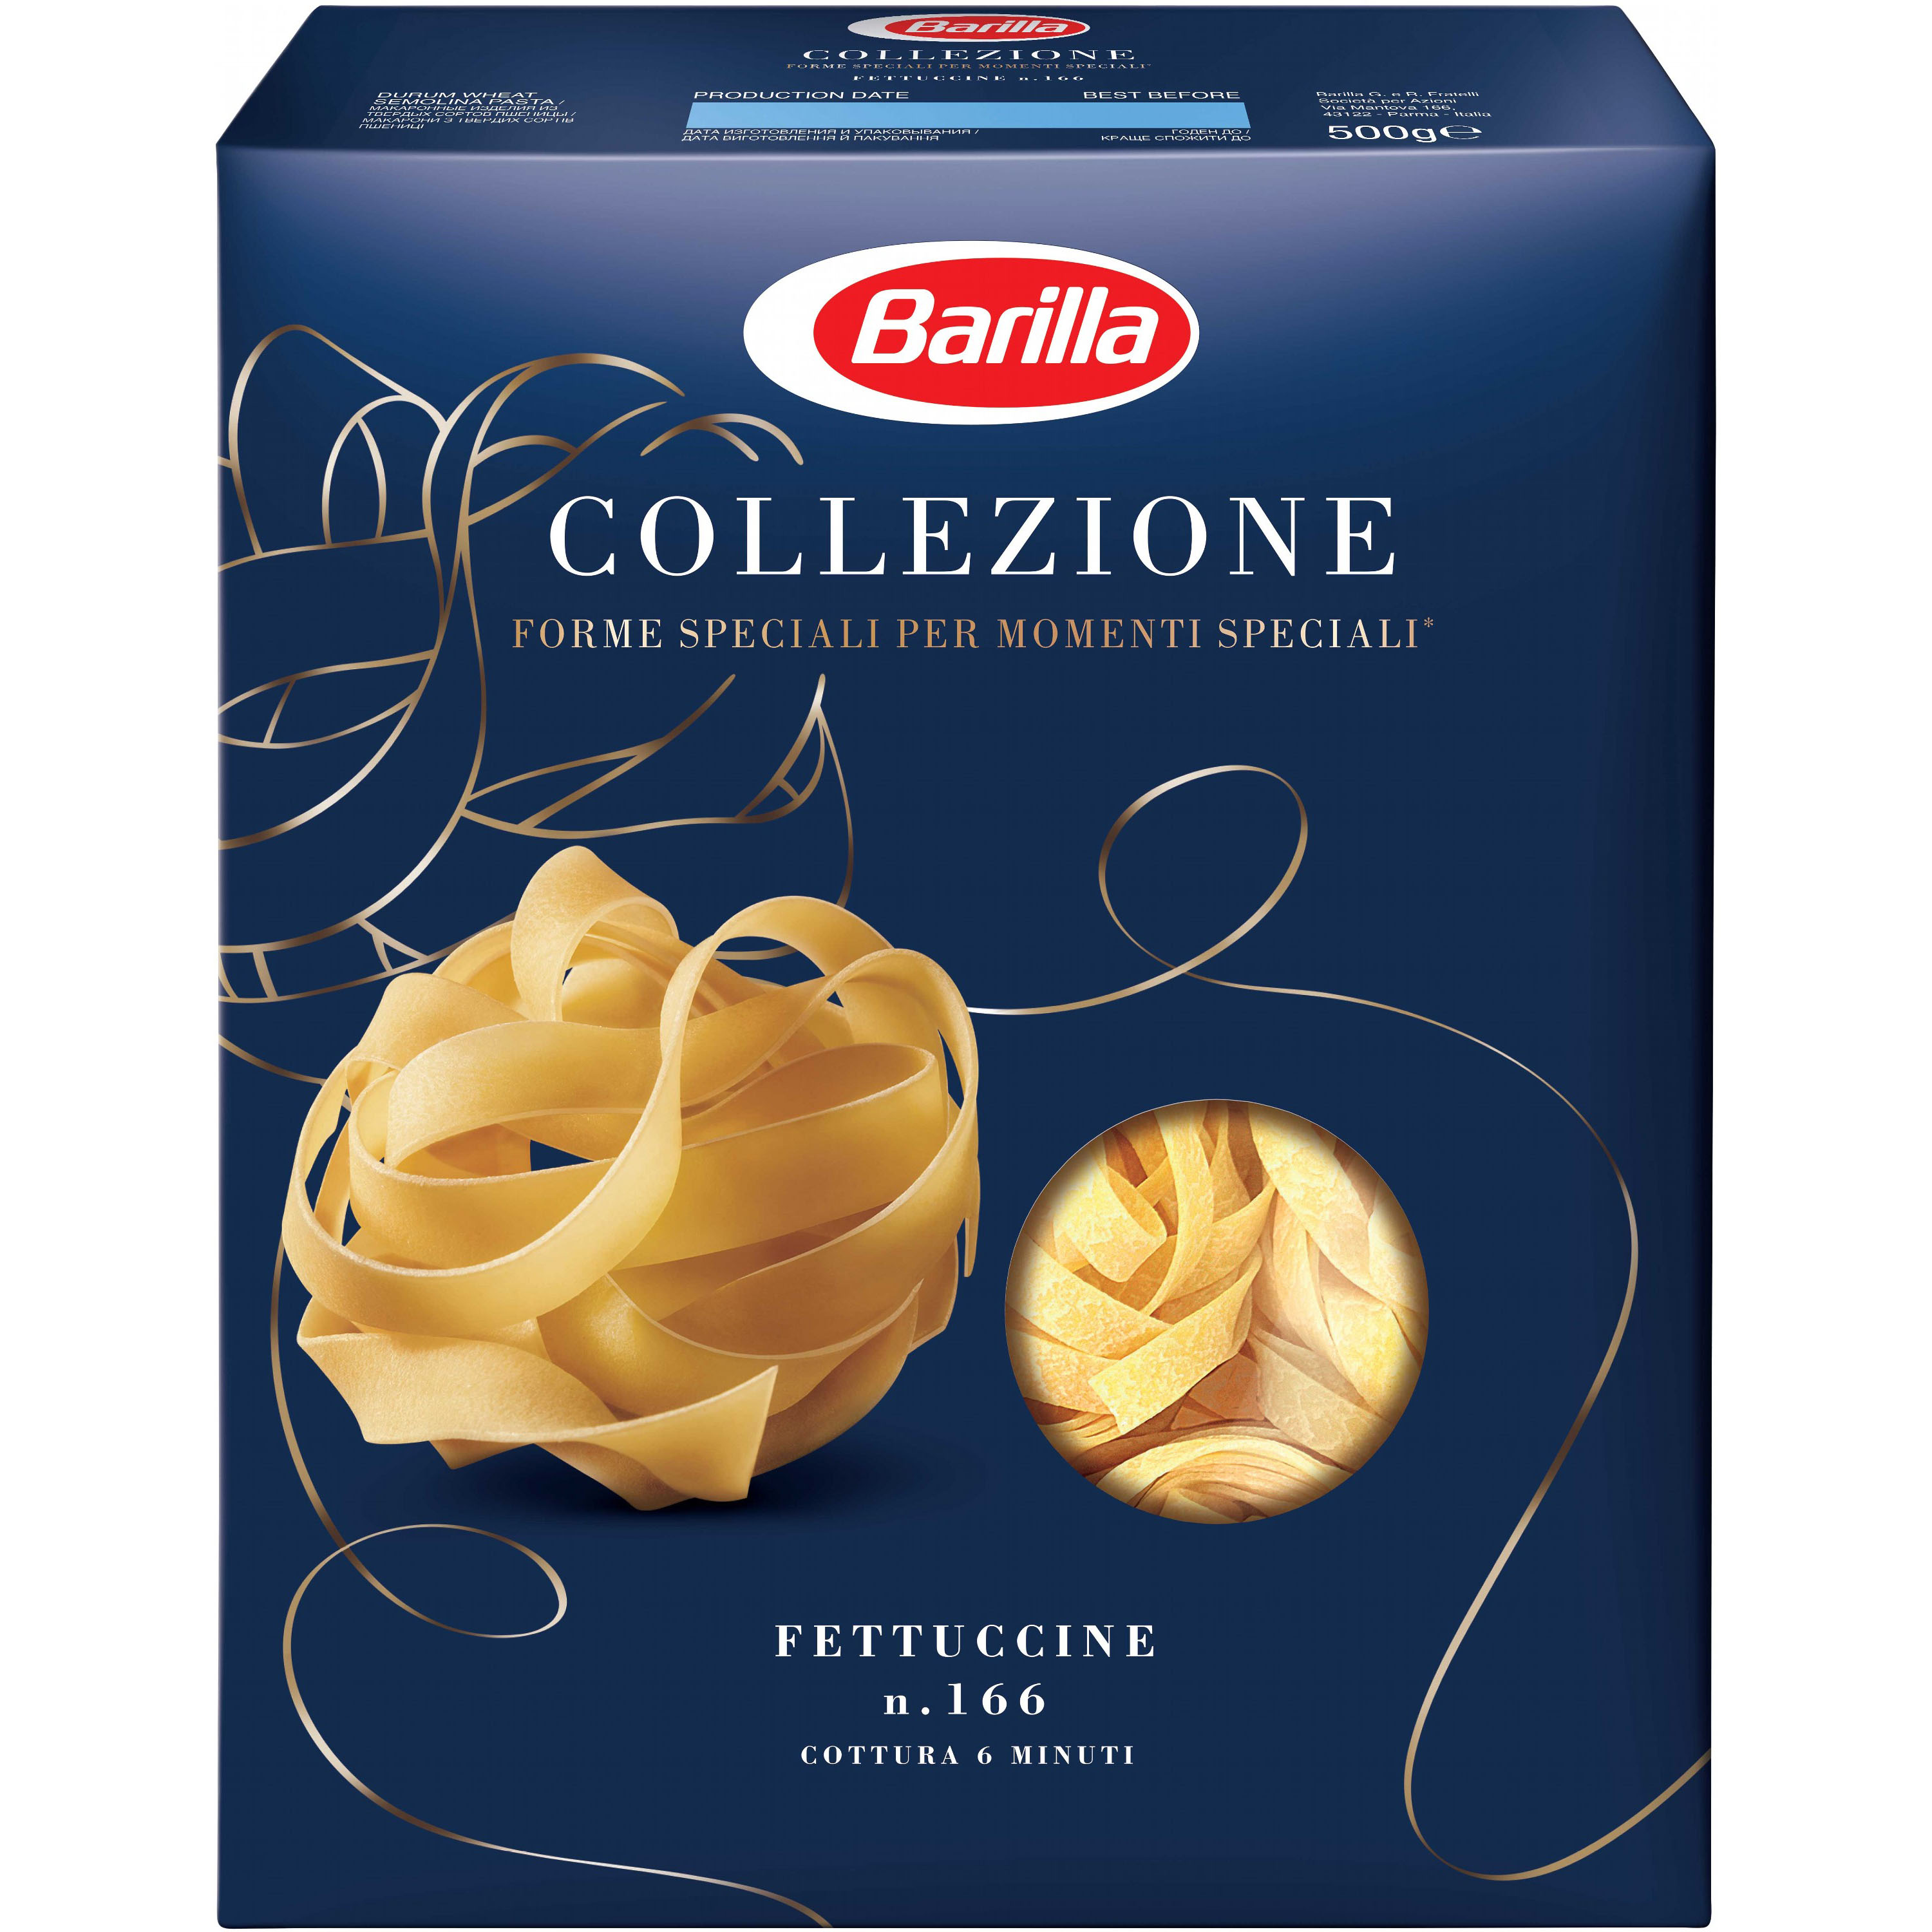 Макаронные изделия Barilla Collezione Fettuccine №166 500 г - фото 1